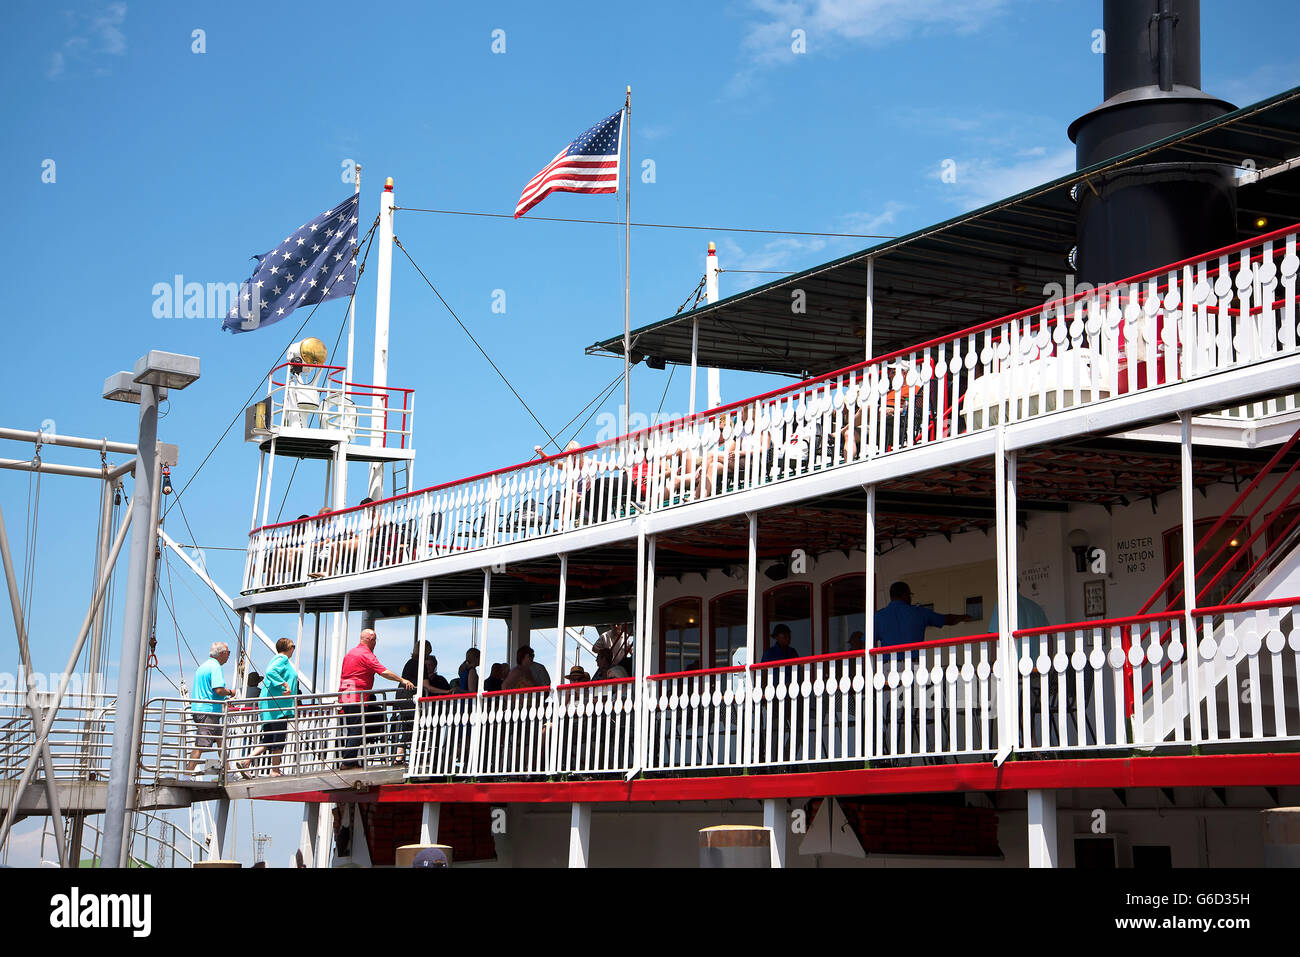 Le bateau à aubes Natchez à La Nouvelle-Orléans en Louisiane USA Banque D'Images